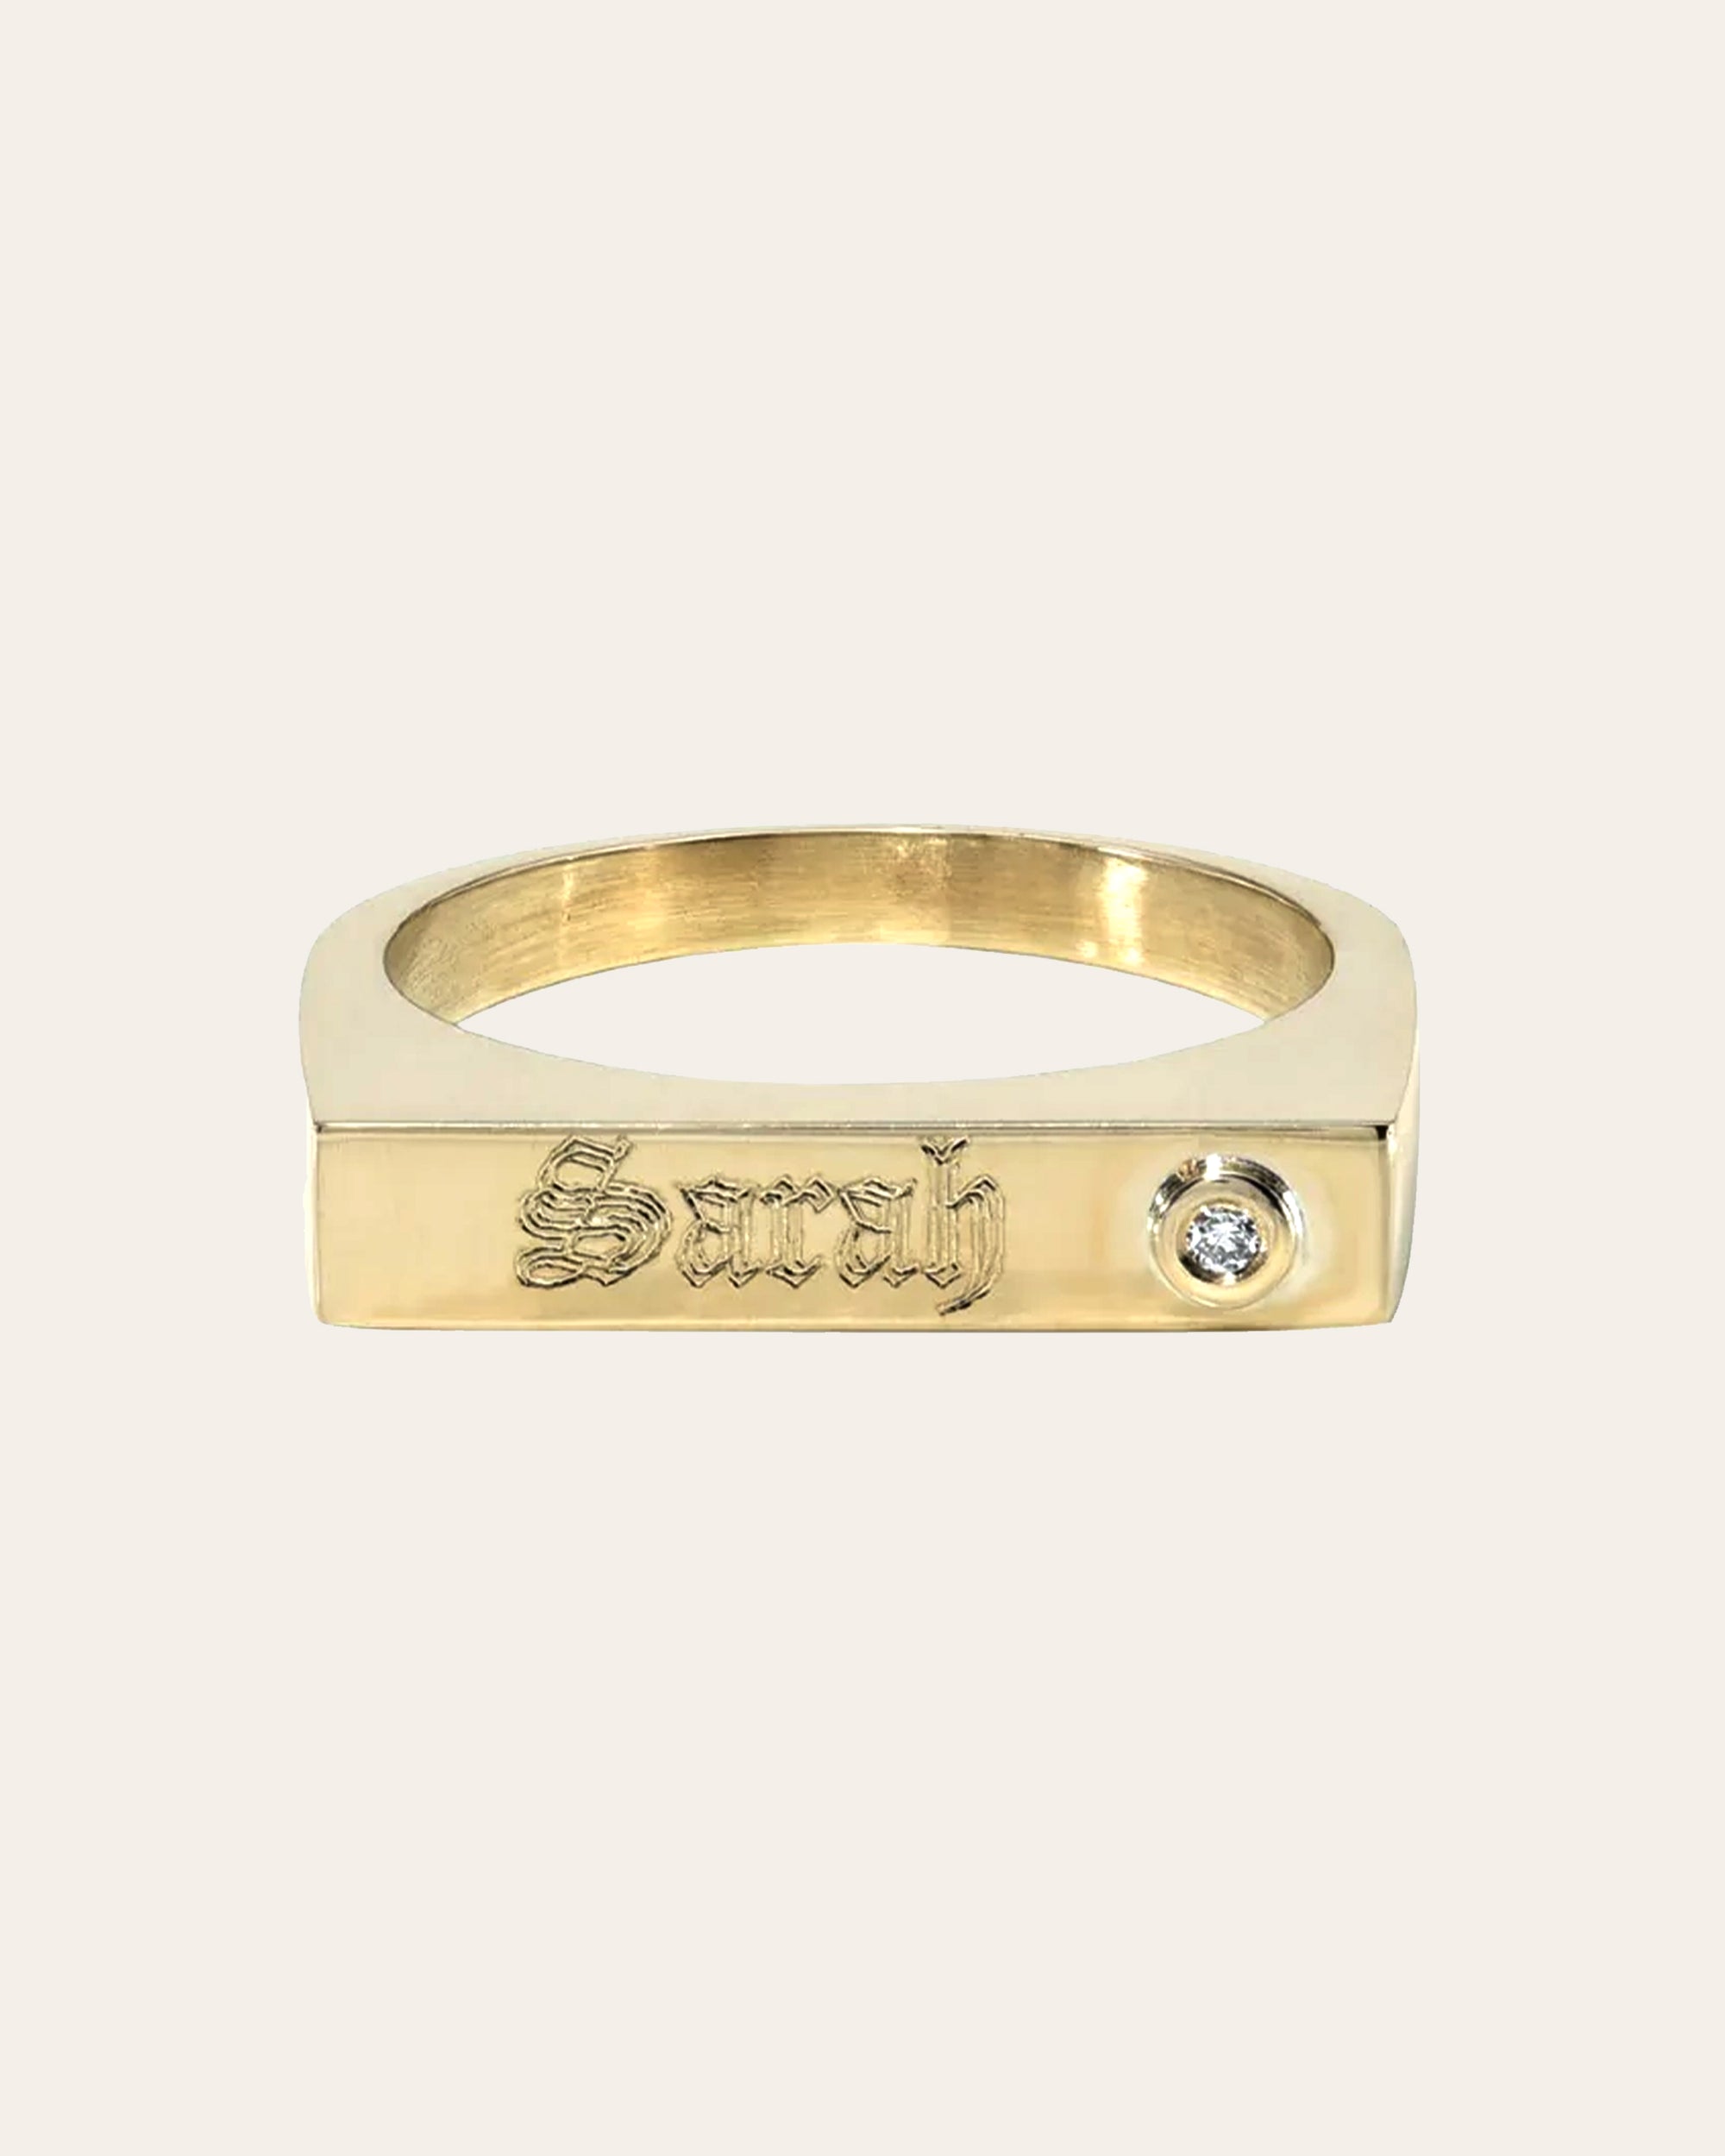 Anillo Personalisado En Oro De 14K, 14k Gold Personalized Ring With Plaque  